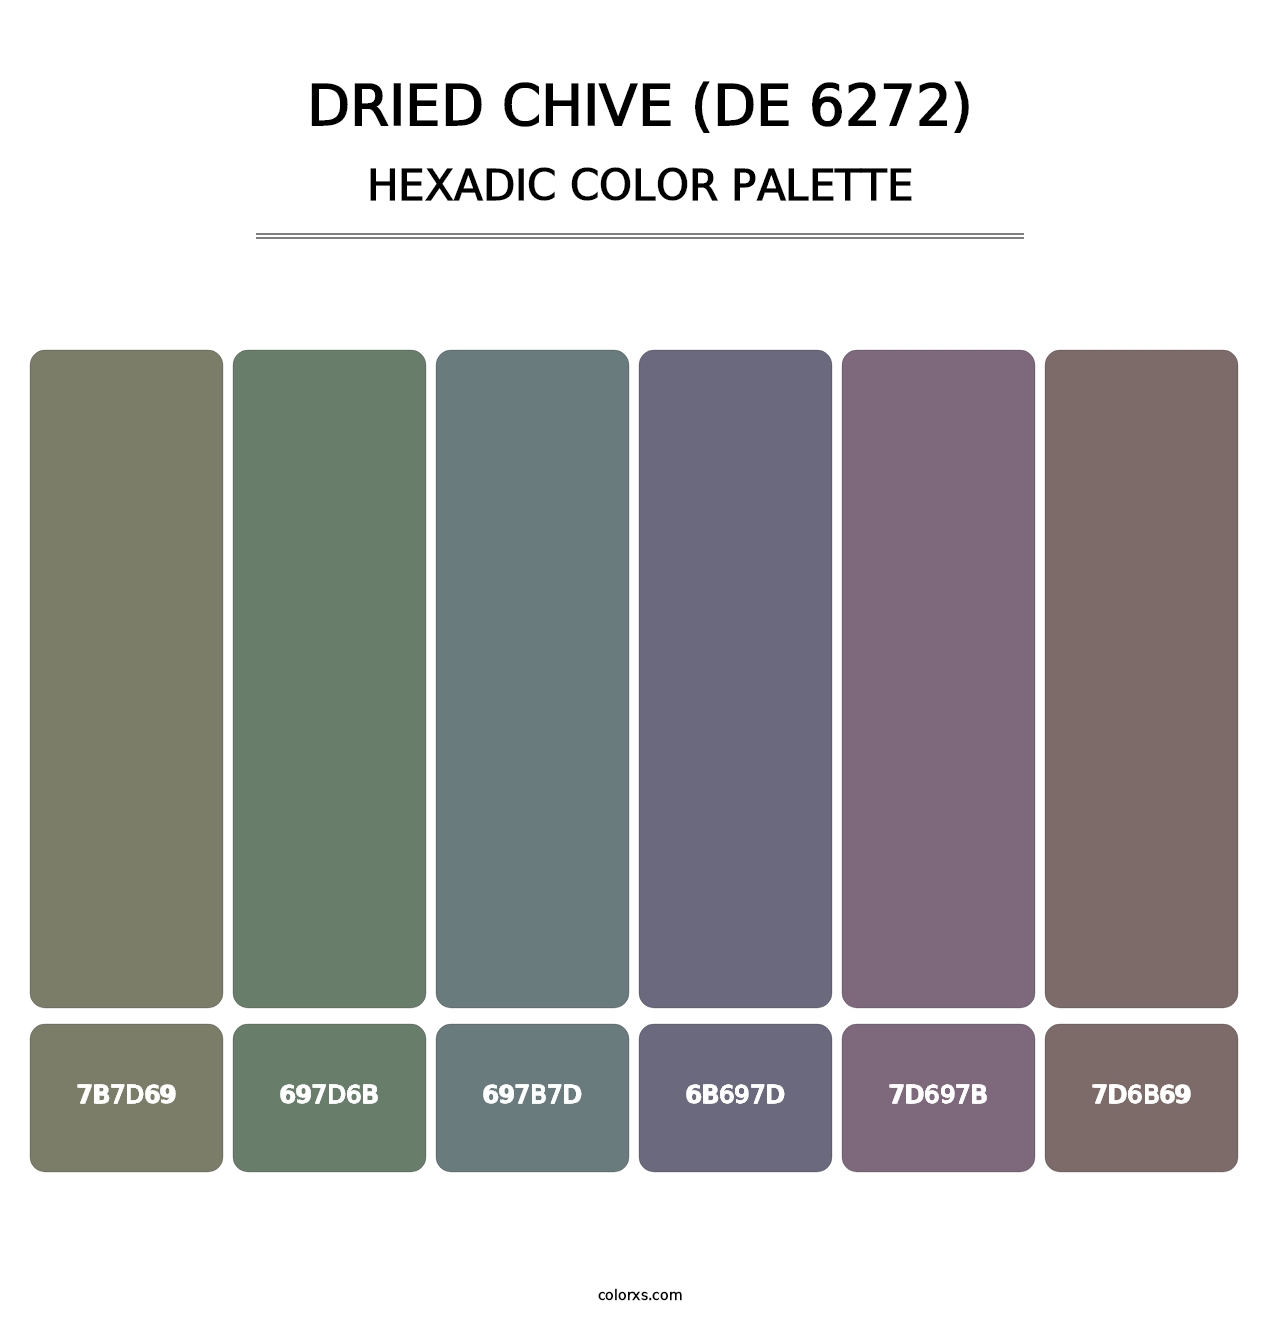 Dried Chive (DE 6272) - Hexadic Color Palette